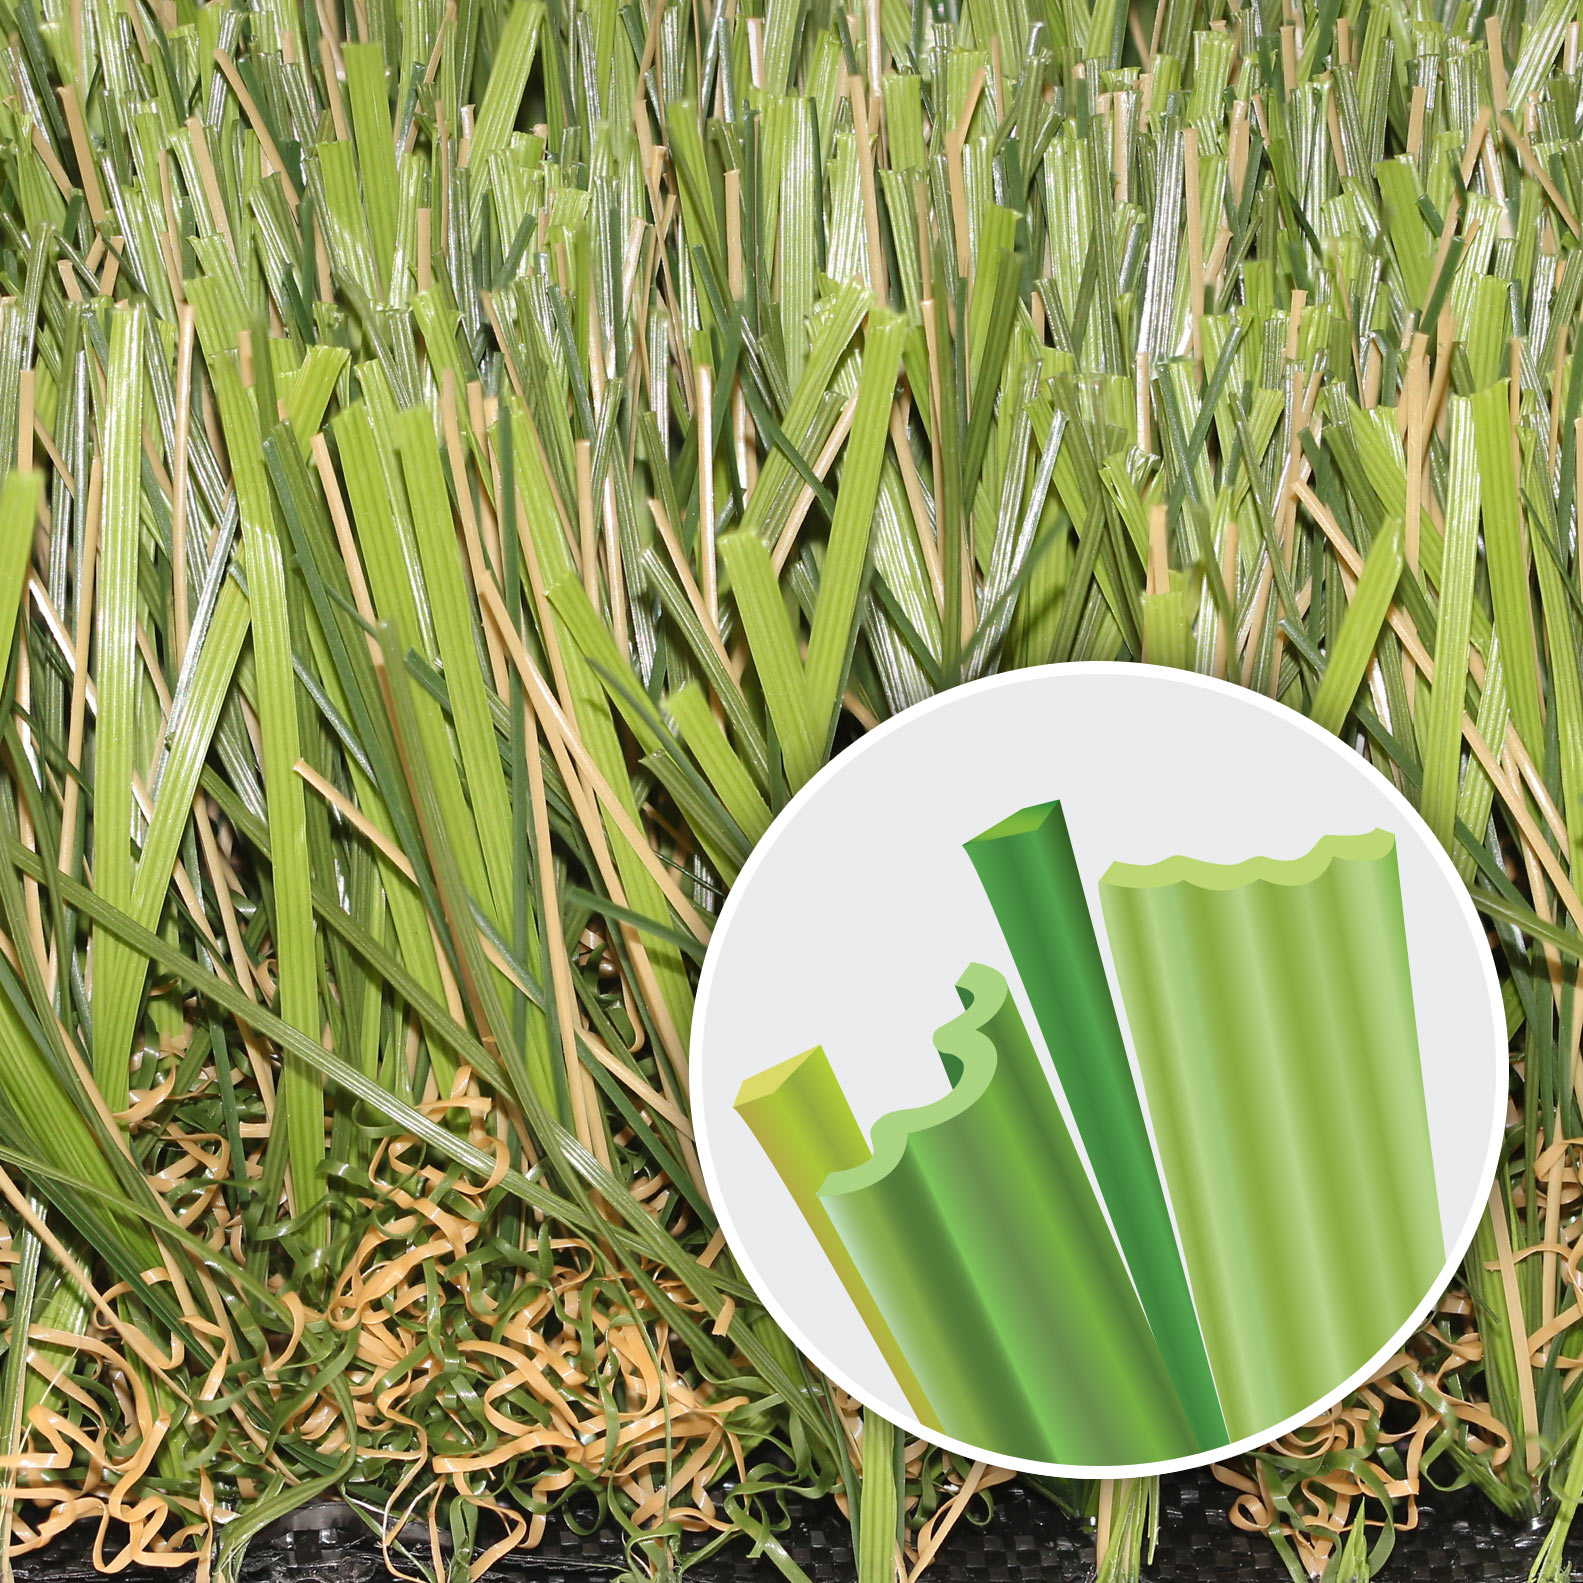 super-natural-turf-blades.jpg Artificial Grass